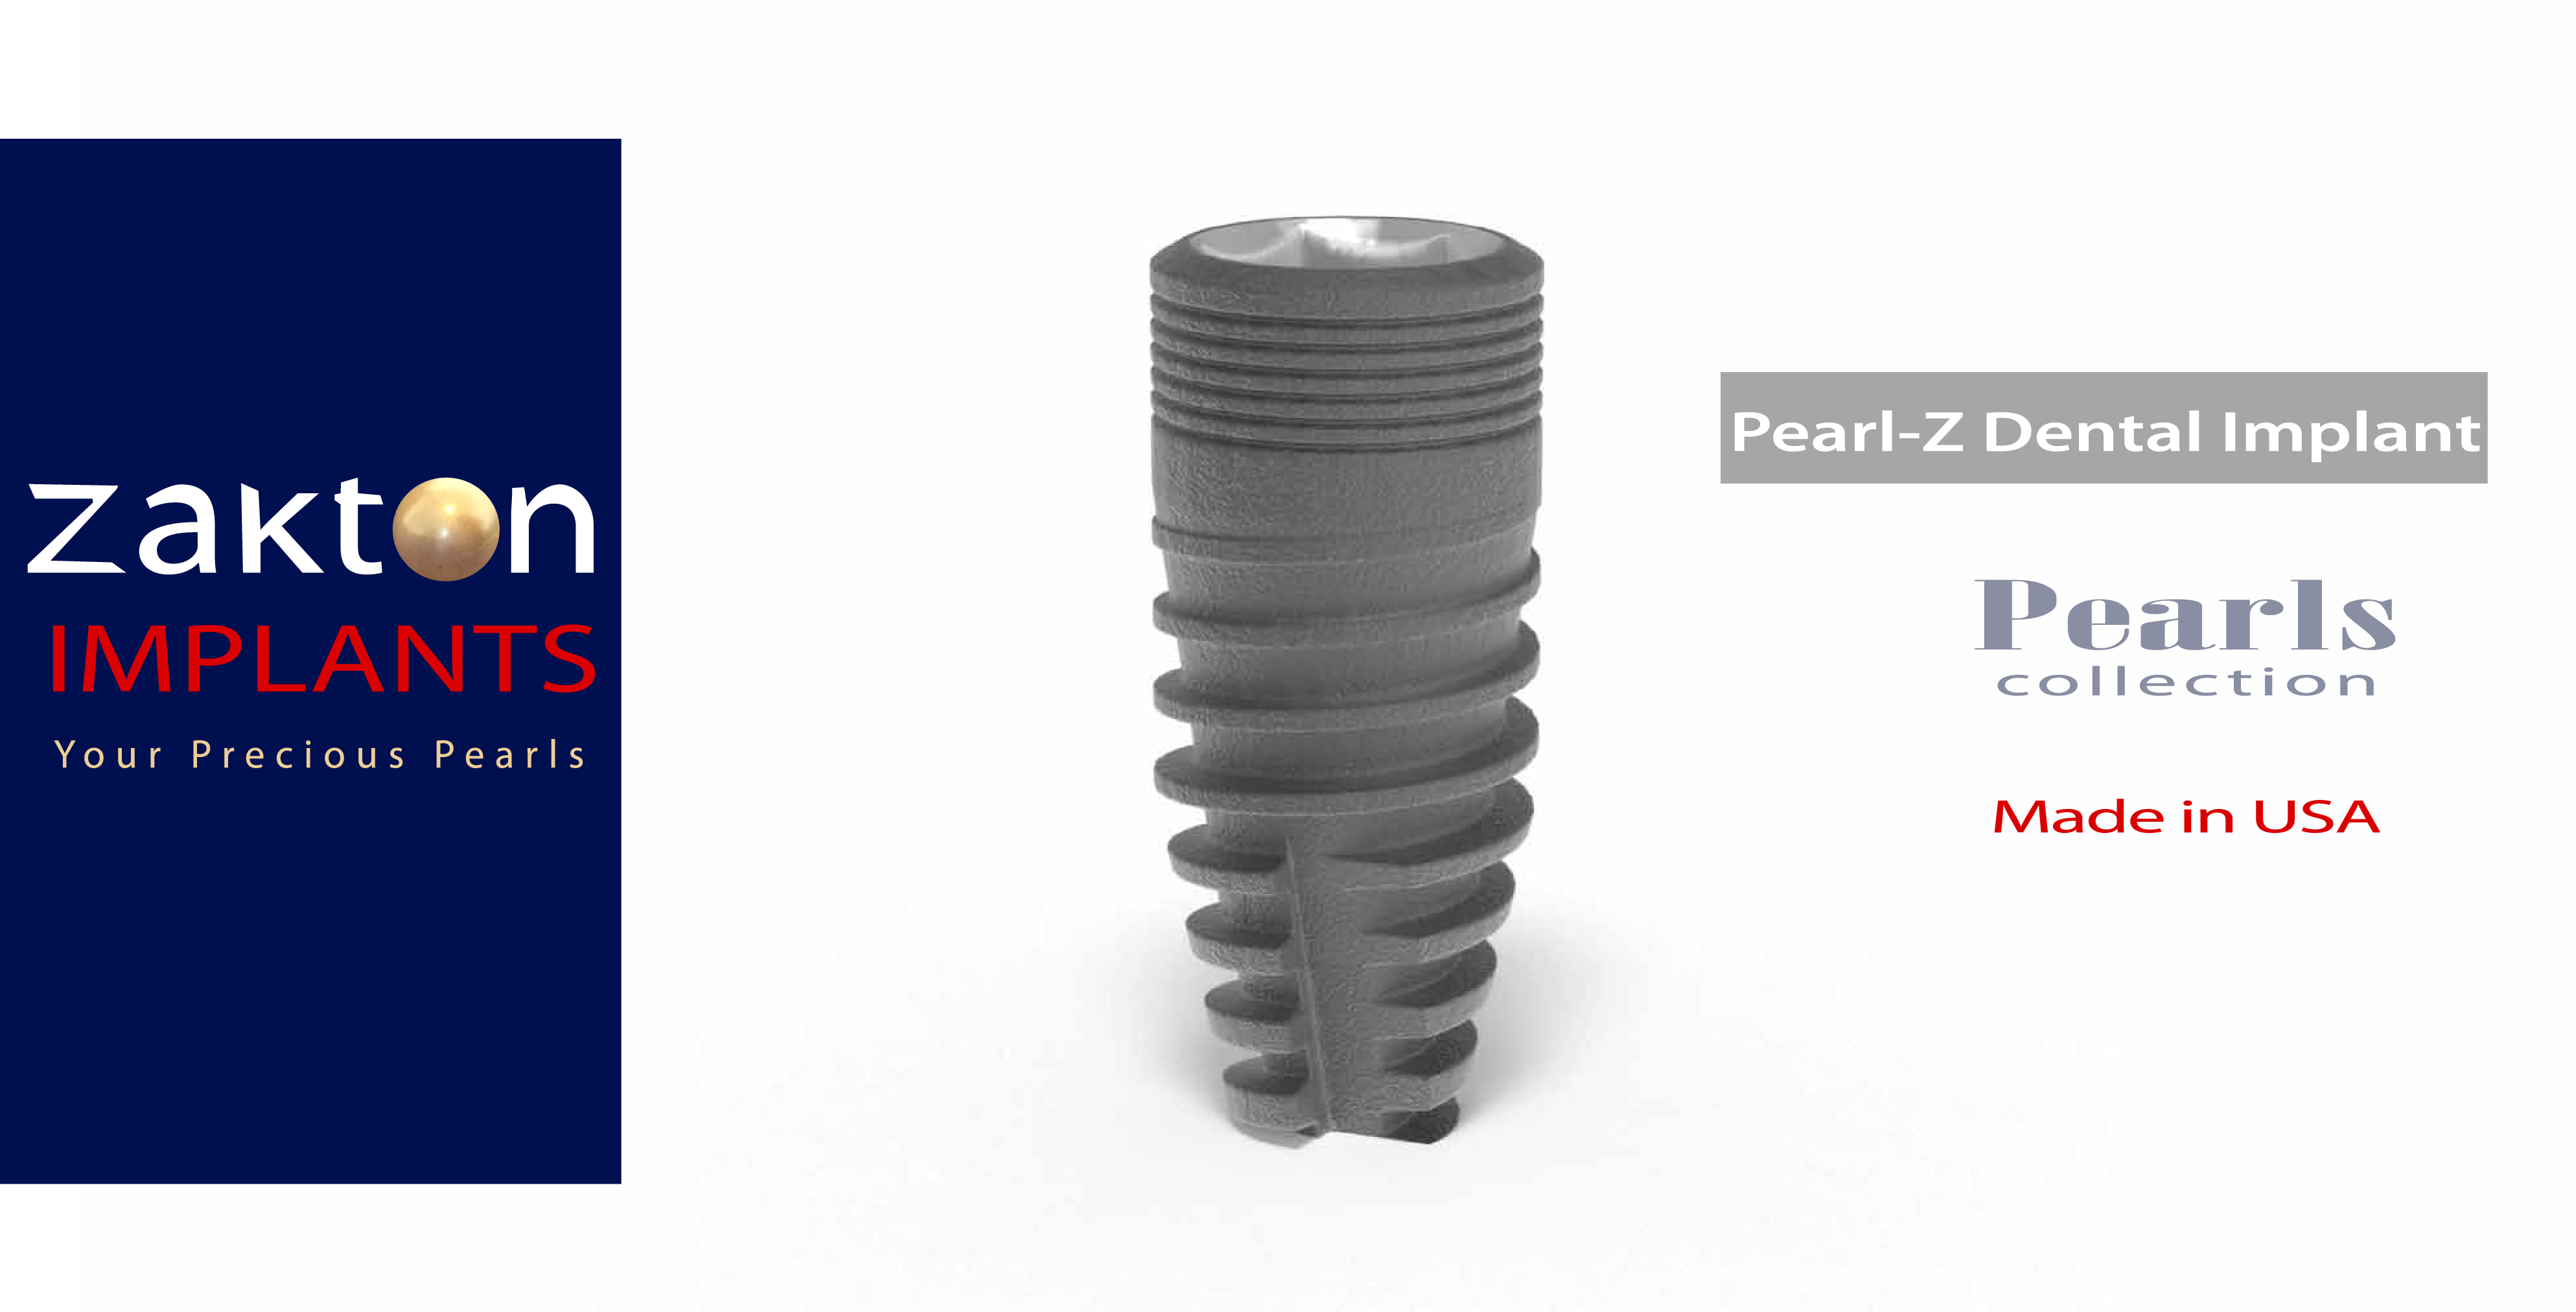 Pearl-Z Dental Implant